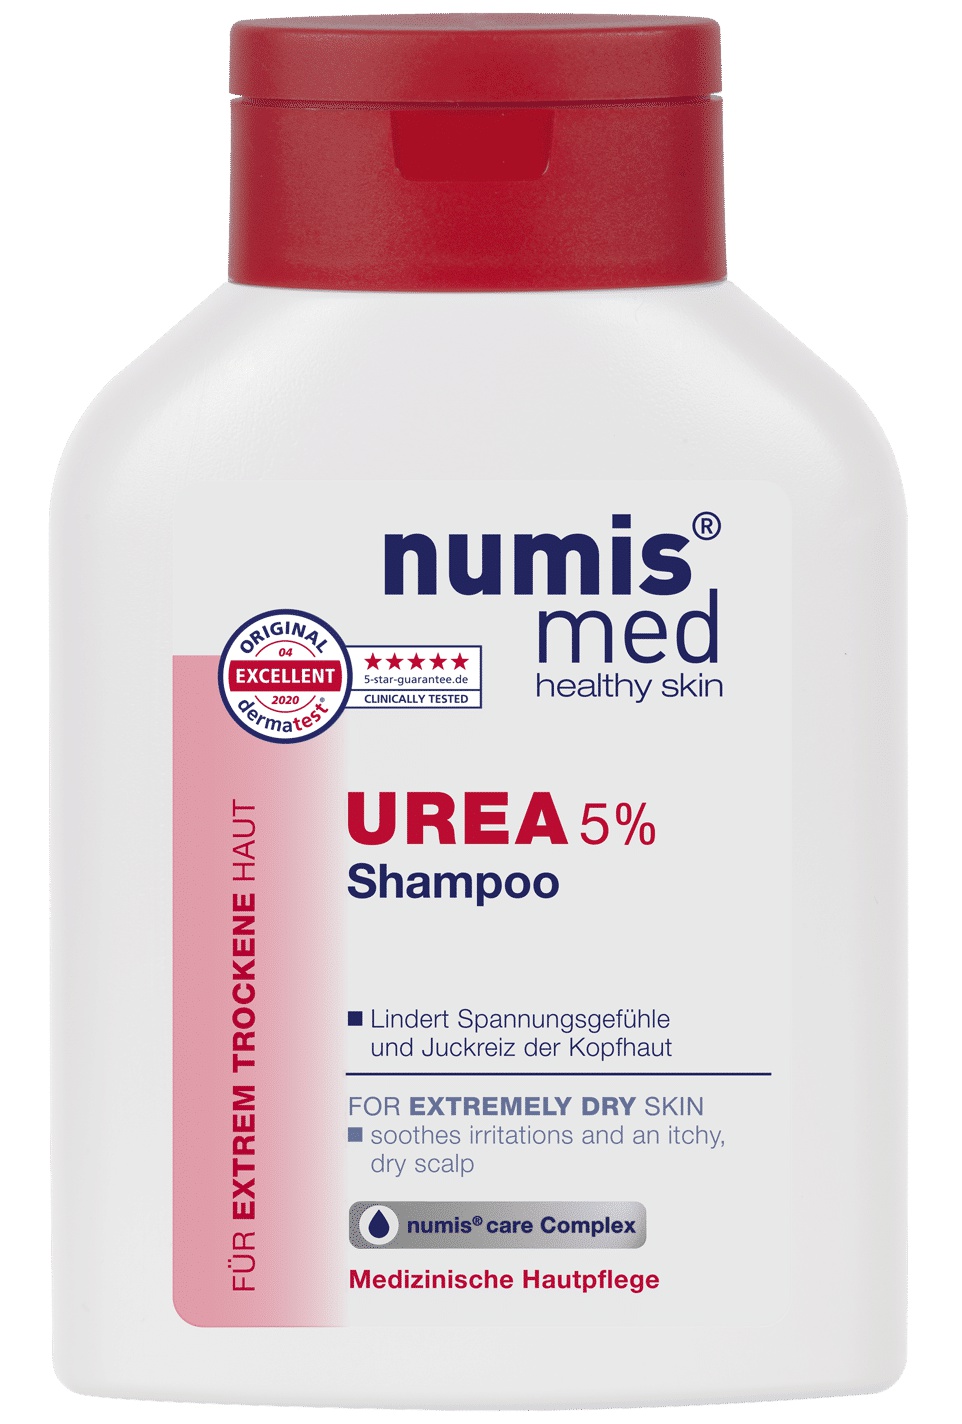 Numis med Urea 5% Every Day Shampoo